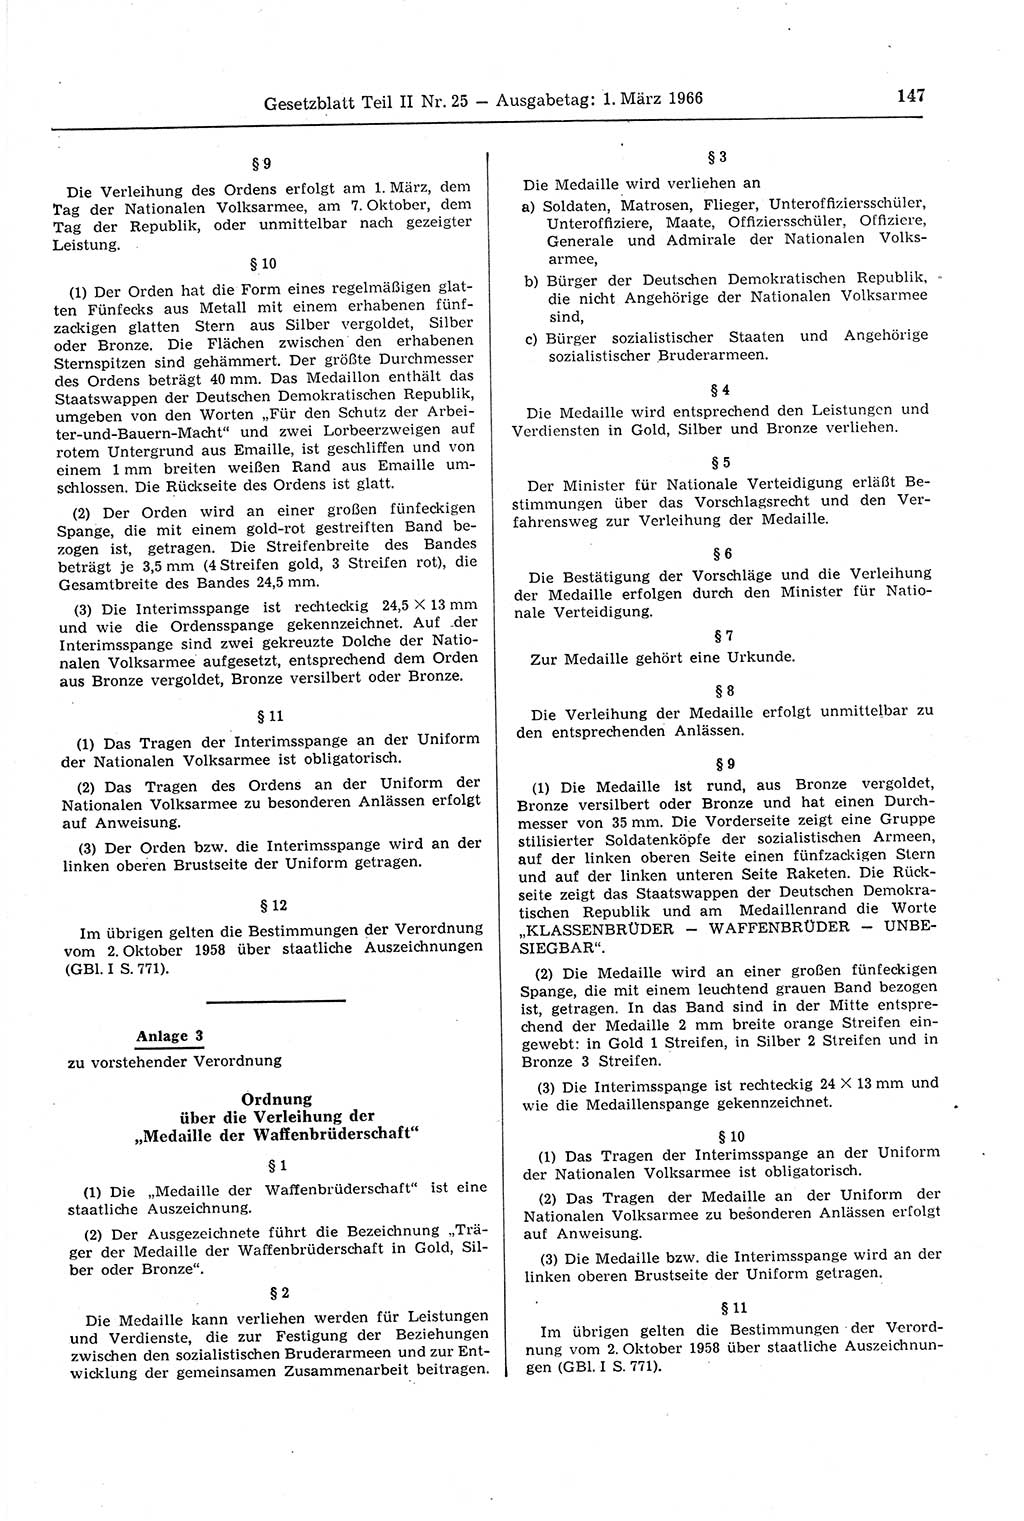 Gesetzblatt (GBl.) der Deutschen Demokratischen Republik (DDR) Teil ⅠⅠ 1966, Seite 147 (GBl. DDR ⅠⅠ 1966, S. 147)